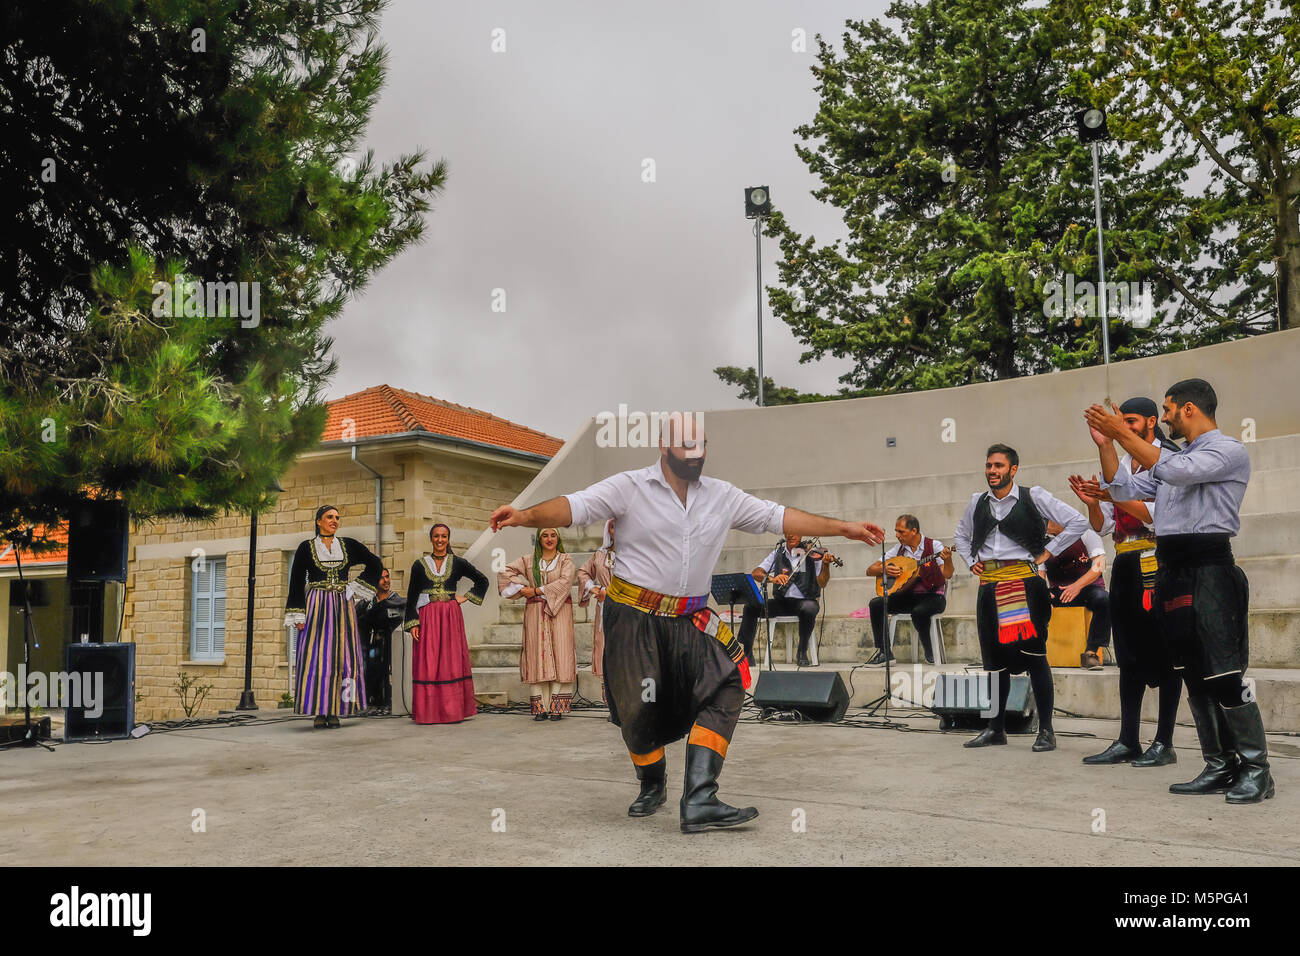 Arsos, Zypern - Oktober 8, 2017: Zypriotische Tänzer in traditionellen Kostümen mit anderen Tänzern klatschen. Stockfoto